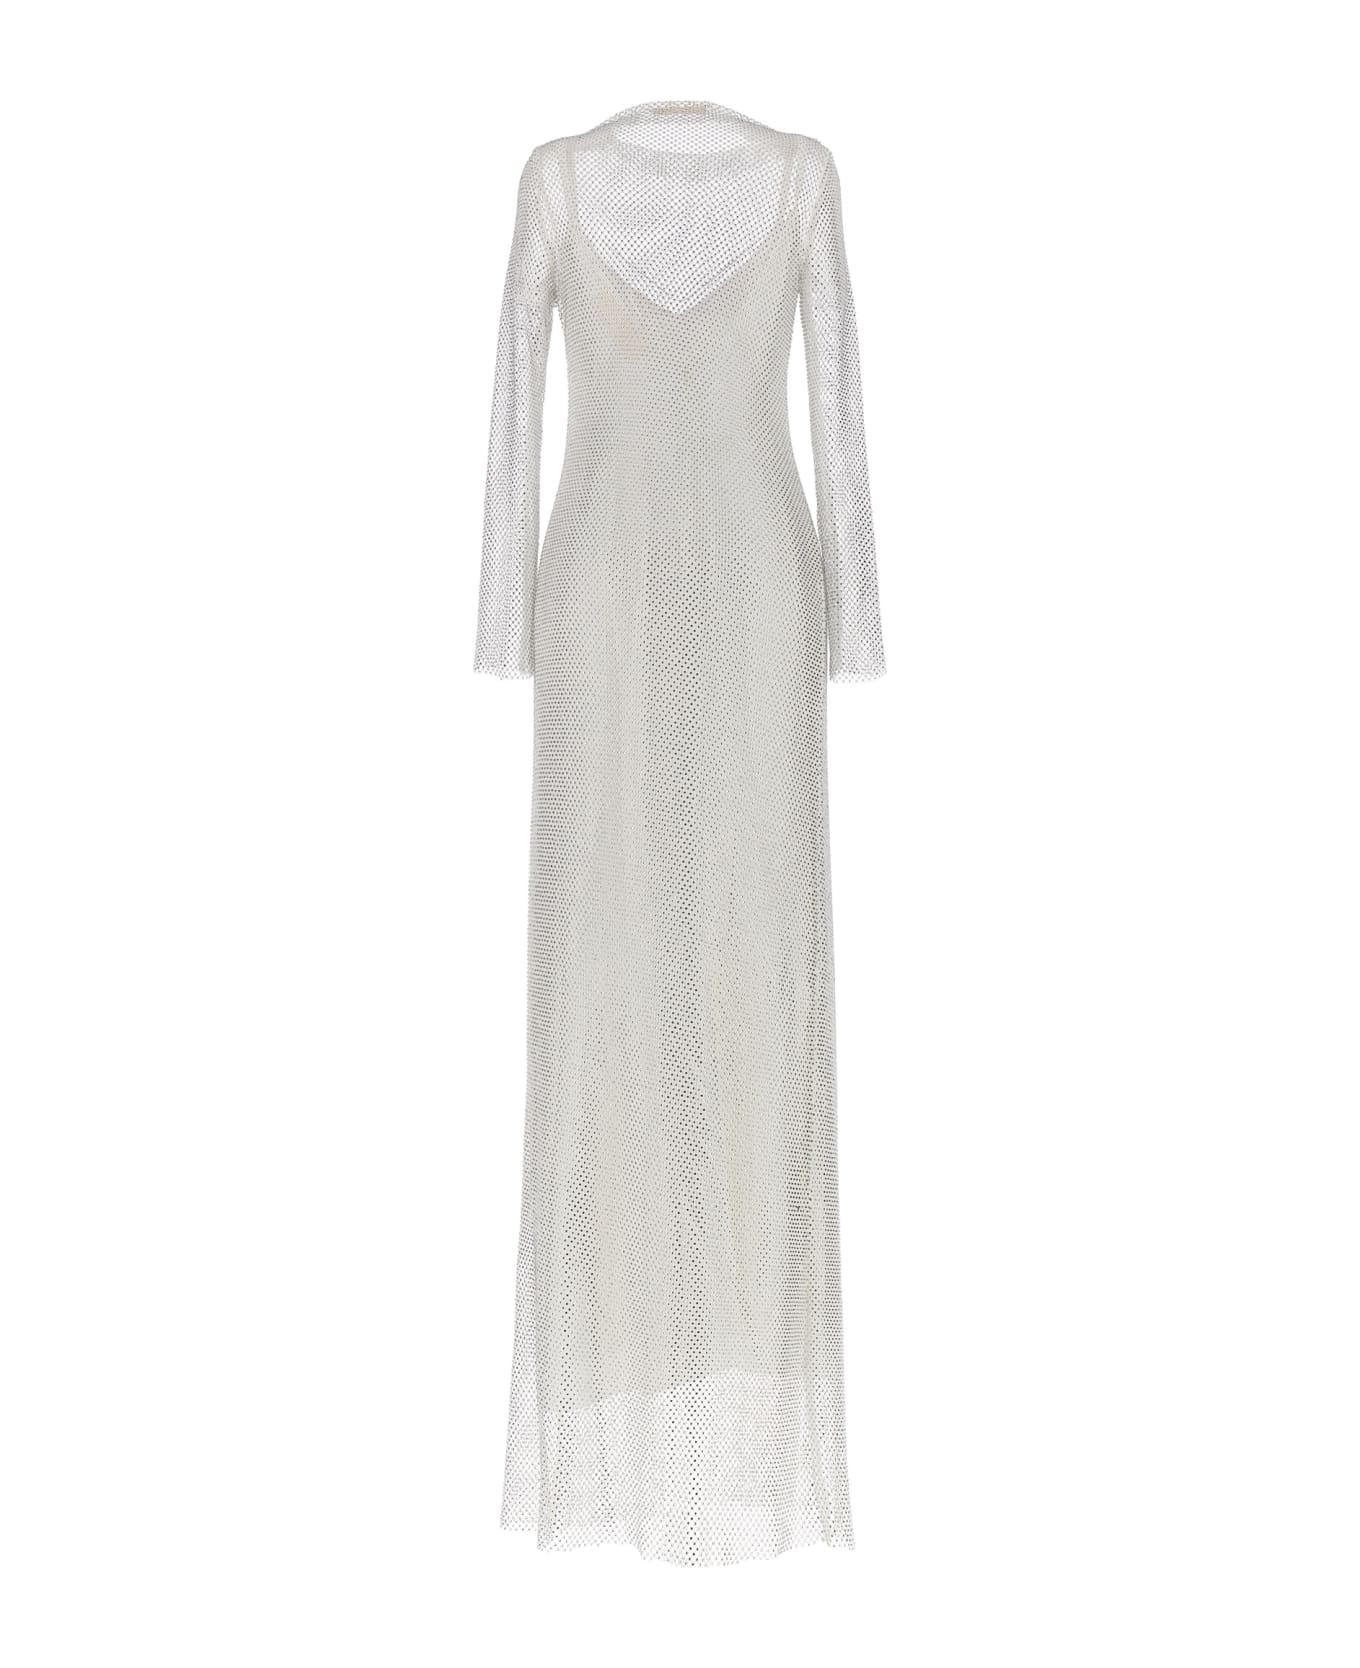 Max Mara 'caracas' Dress - White